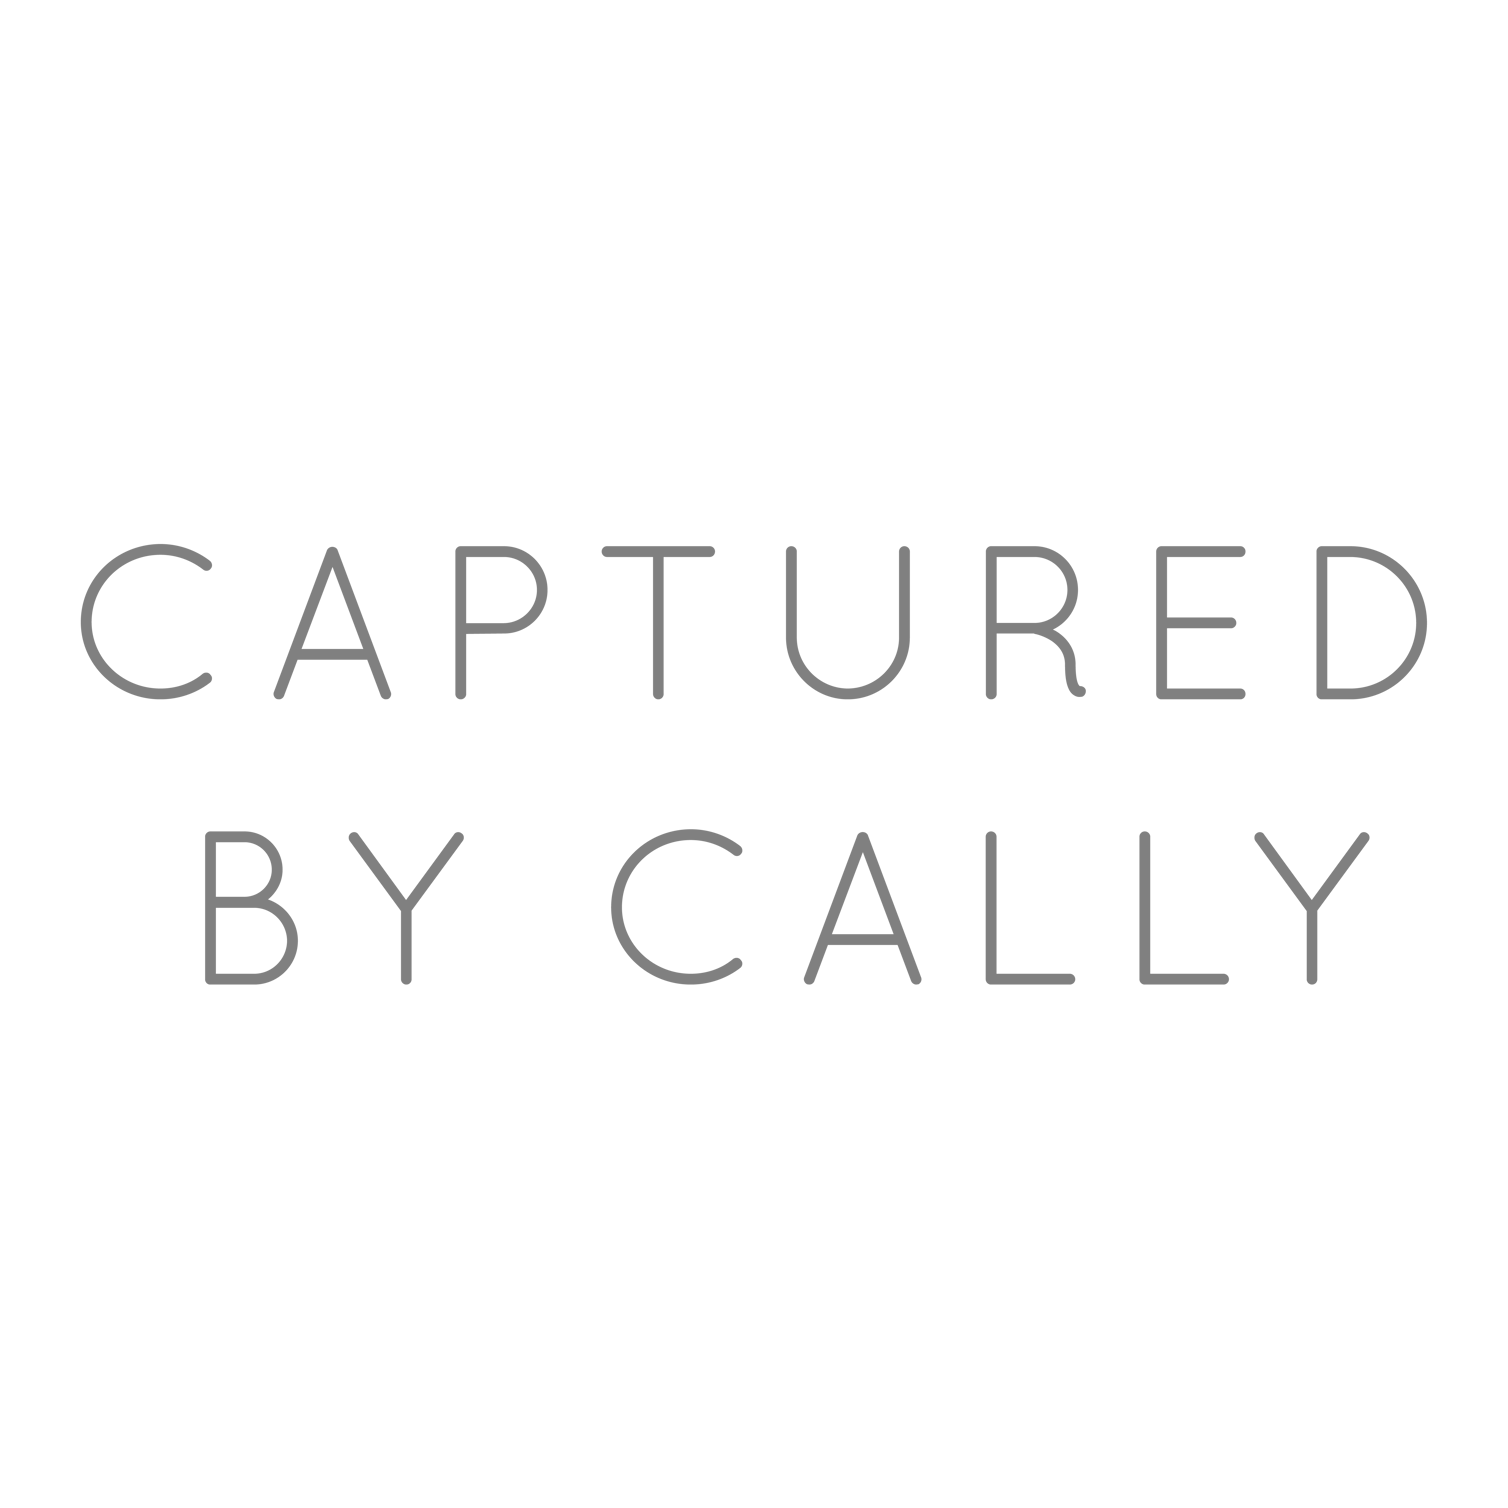 CapturedbyCallyPhotography